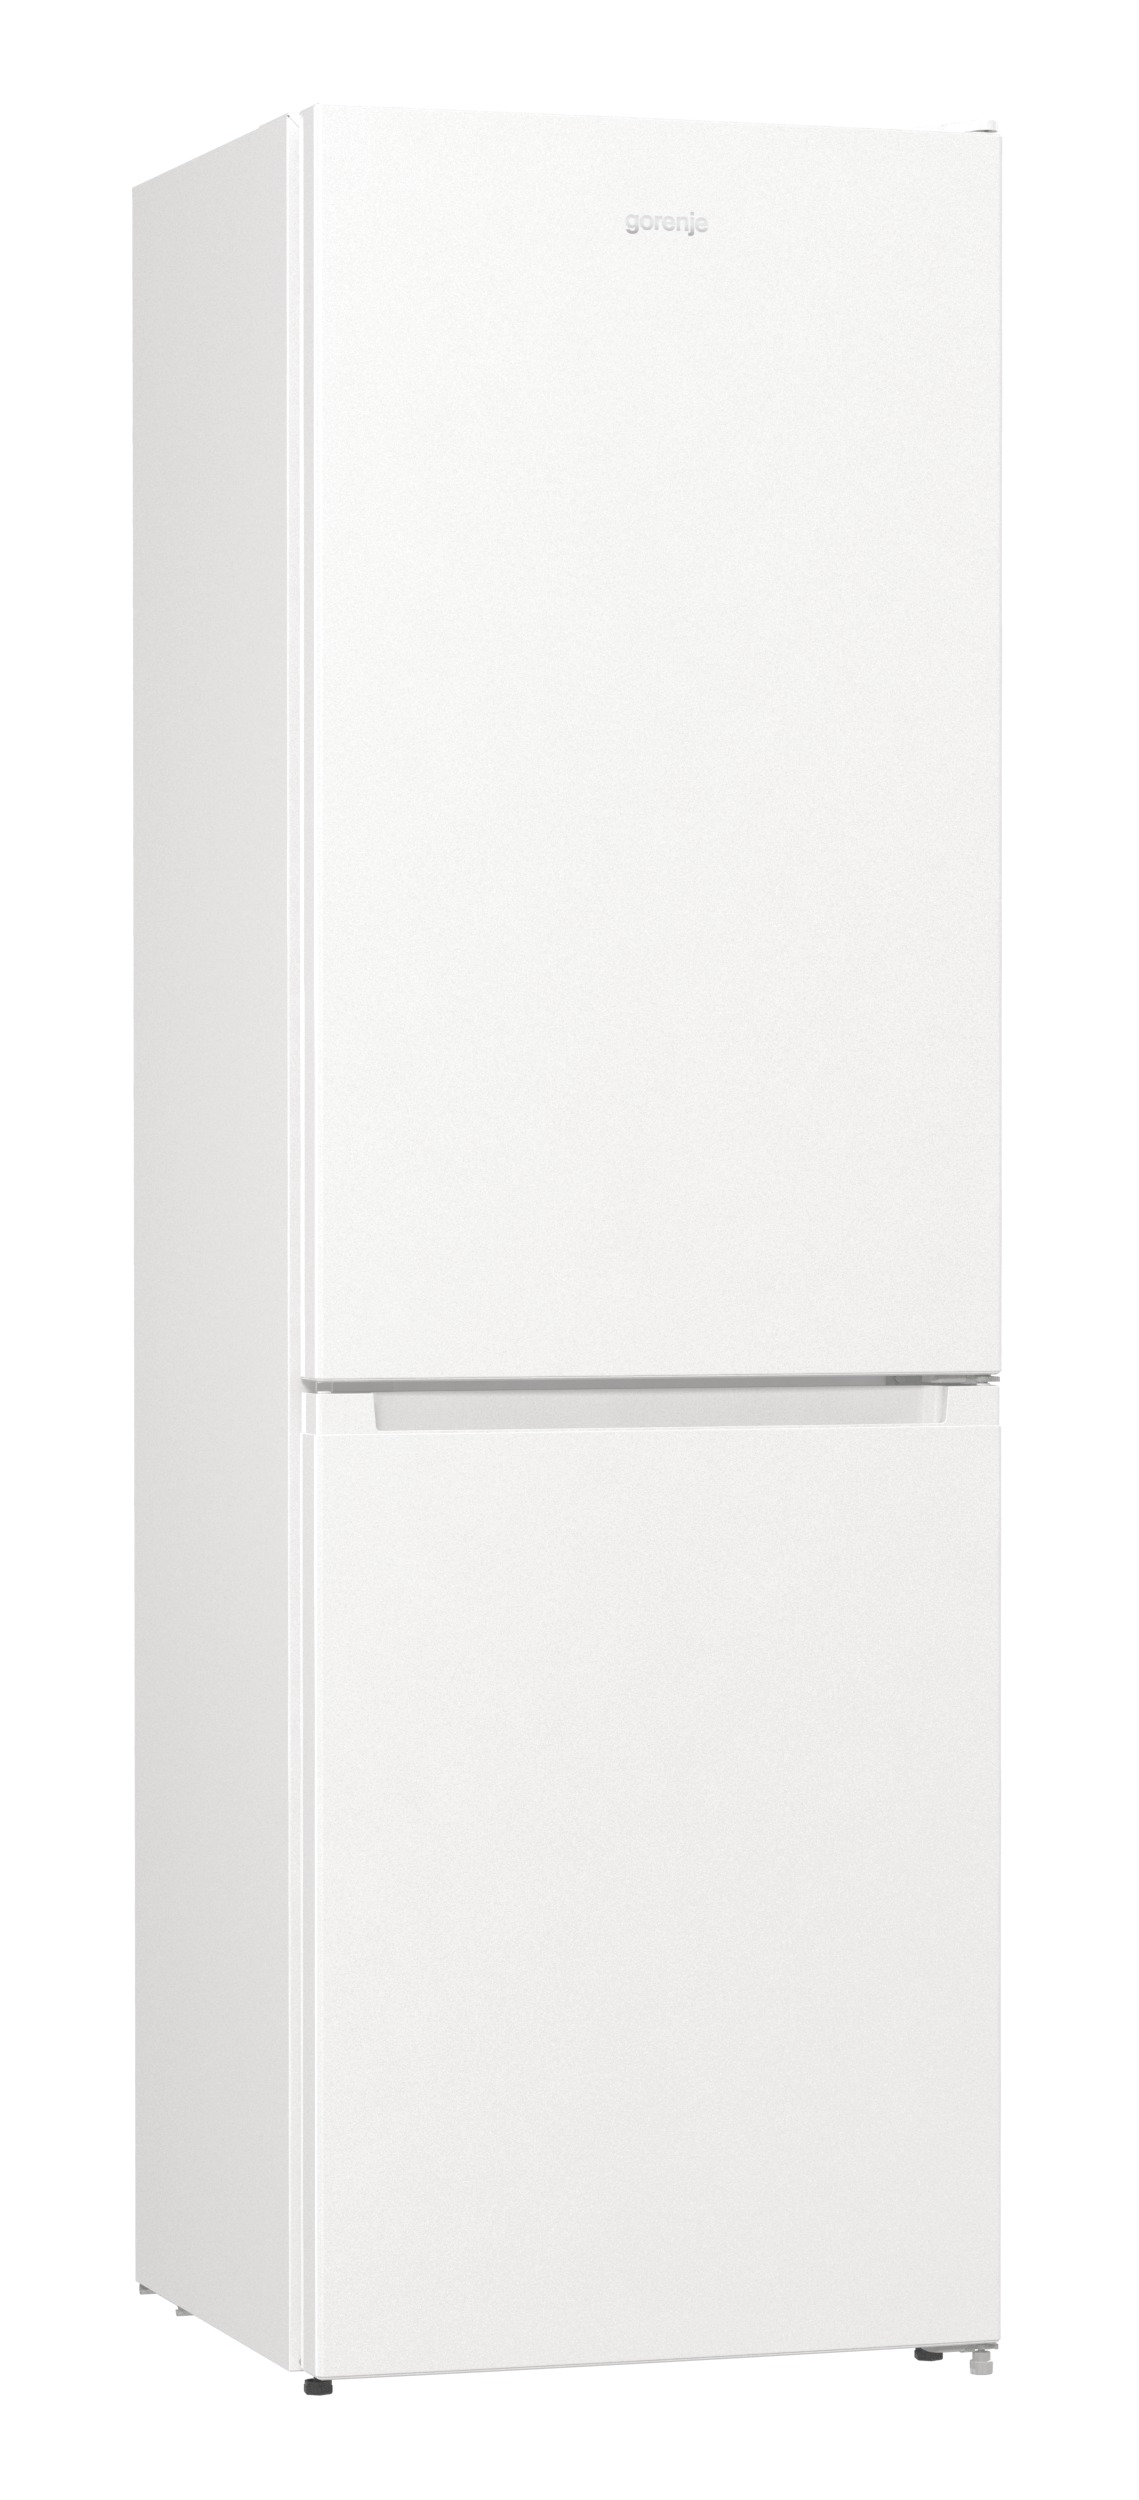 Двухкамерный холодильник GORENJE NRK6191EW4																		 — описание, фото, цены в интернет-магазине Премьер Техно